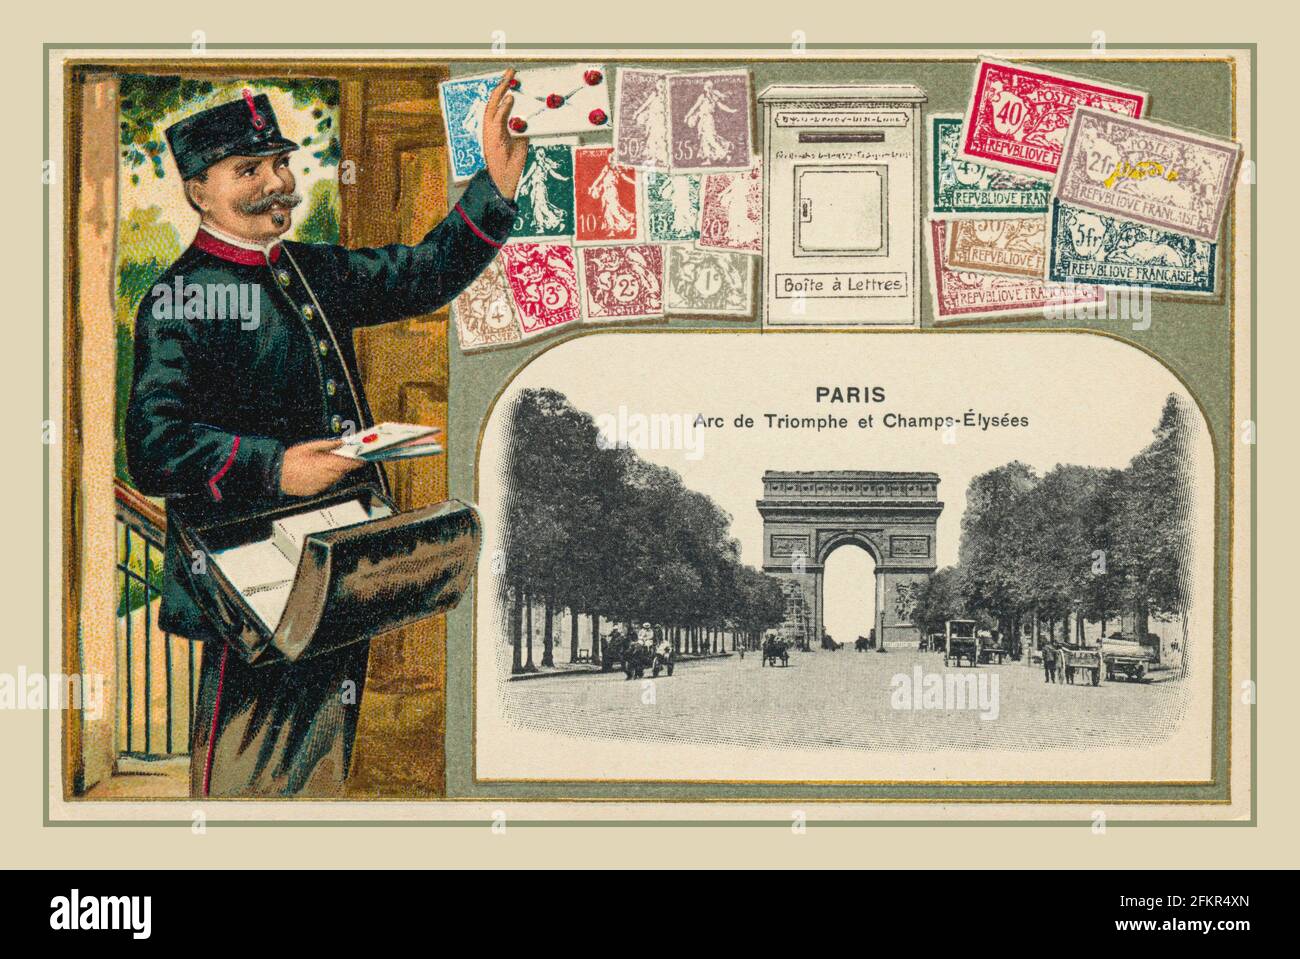 CARTOLINA D'EPOCA PARIGI POSTMAN D'EPOCA Vintage 1890's French Travel Post Card che promuove Parigi con l'Arc de Triomphe e il Postino francese con francobolli e letterbox France Foto Stock